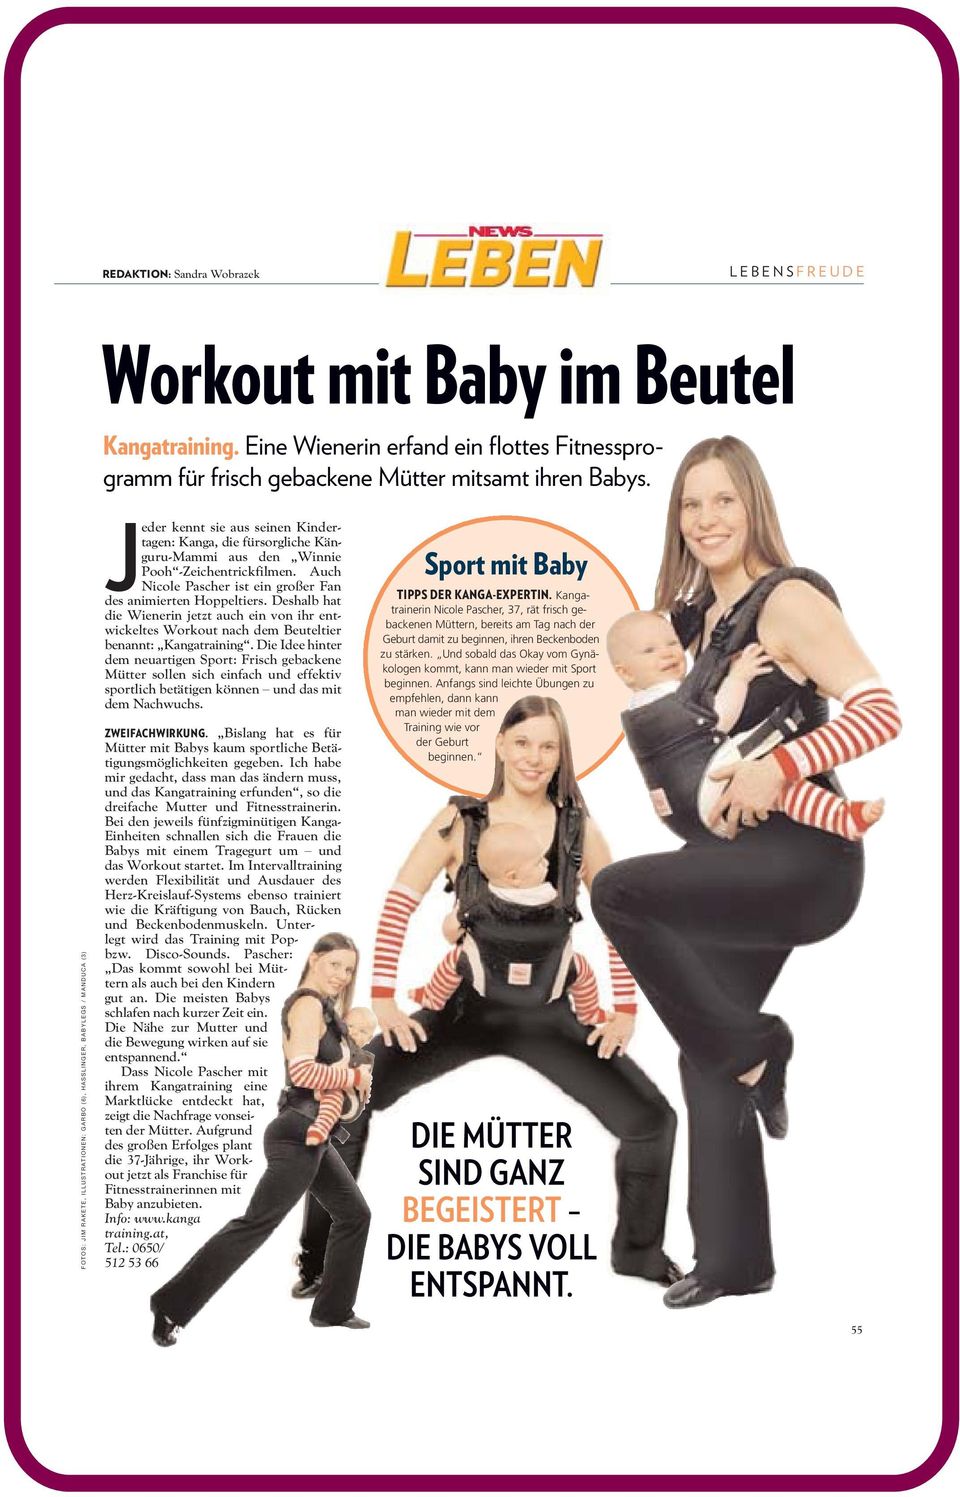 Auch Nicole Pascher ist ein großer Fan des animierten Hoppeltiers. Deshalb hat die Wienerin jetzt auch ein von ihr entwickeltes Workout nach dem Beuteltier benannt: Kangatraining.